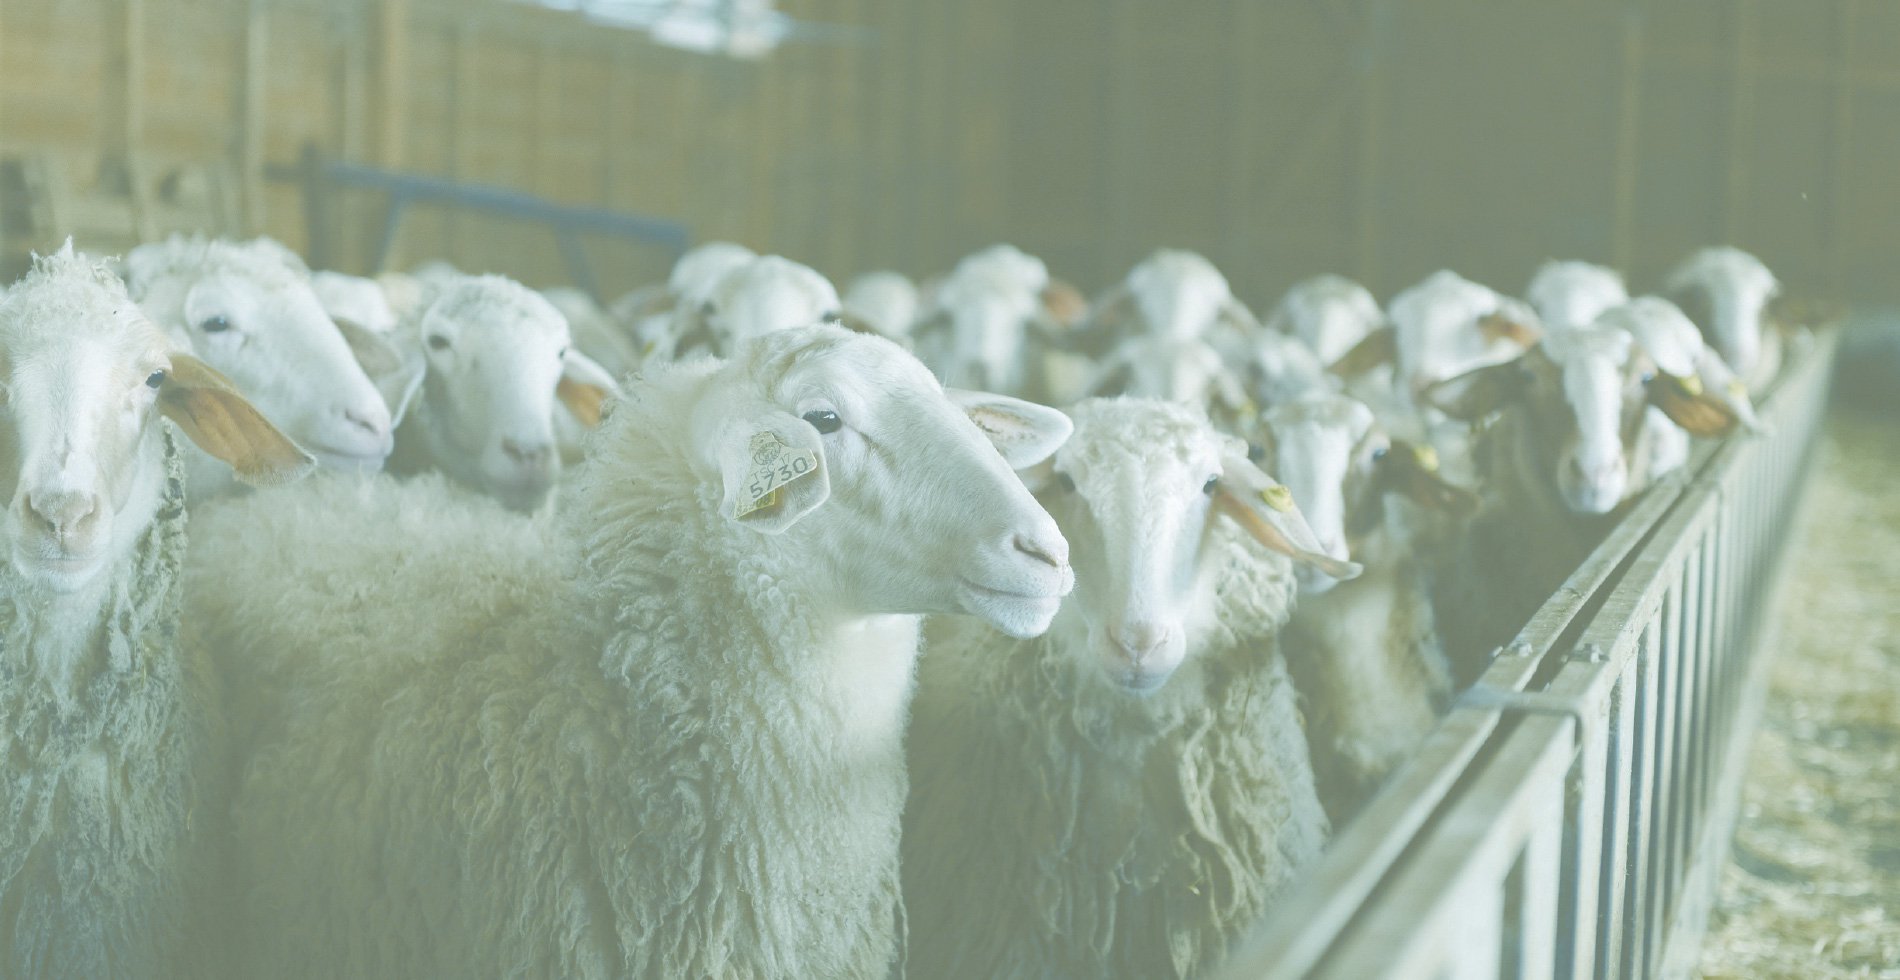 Πρόβατα σε σταύλο